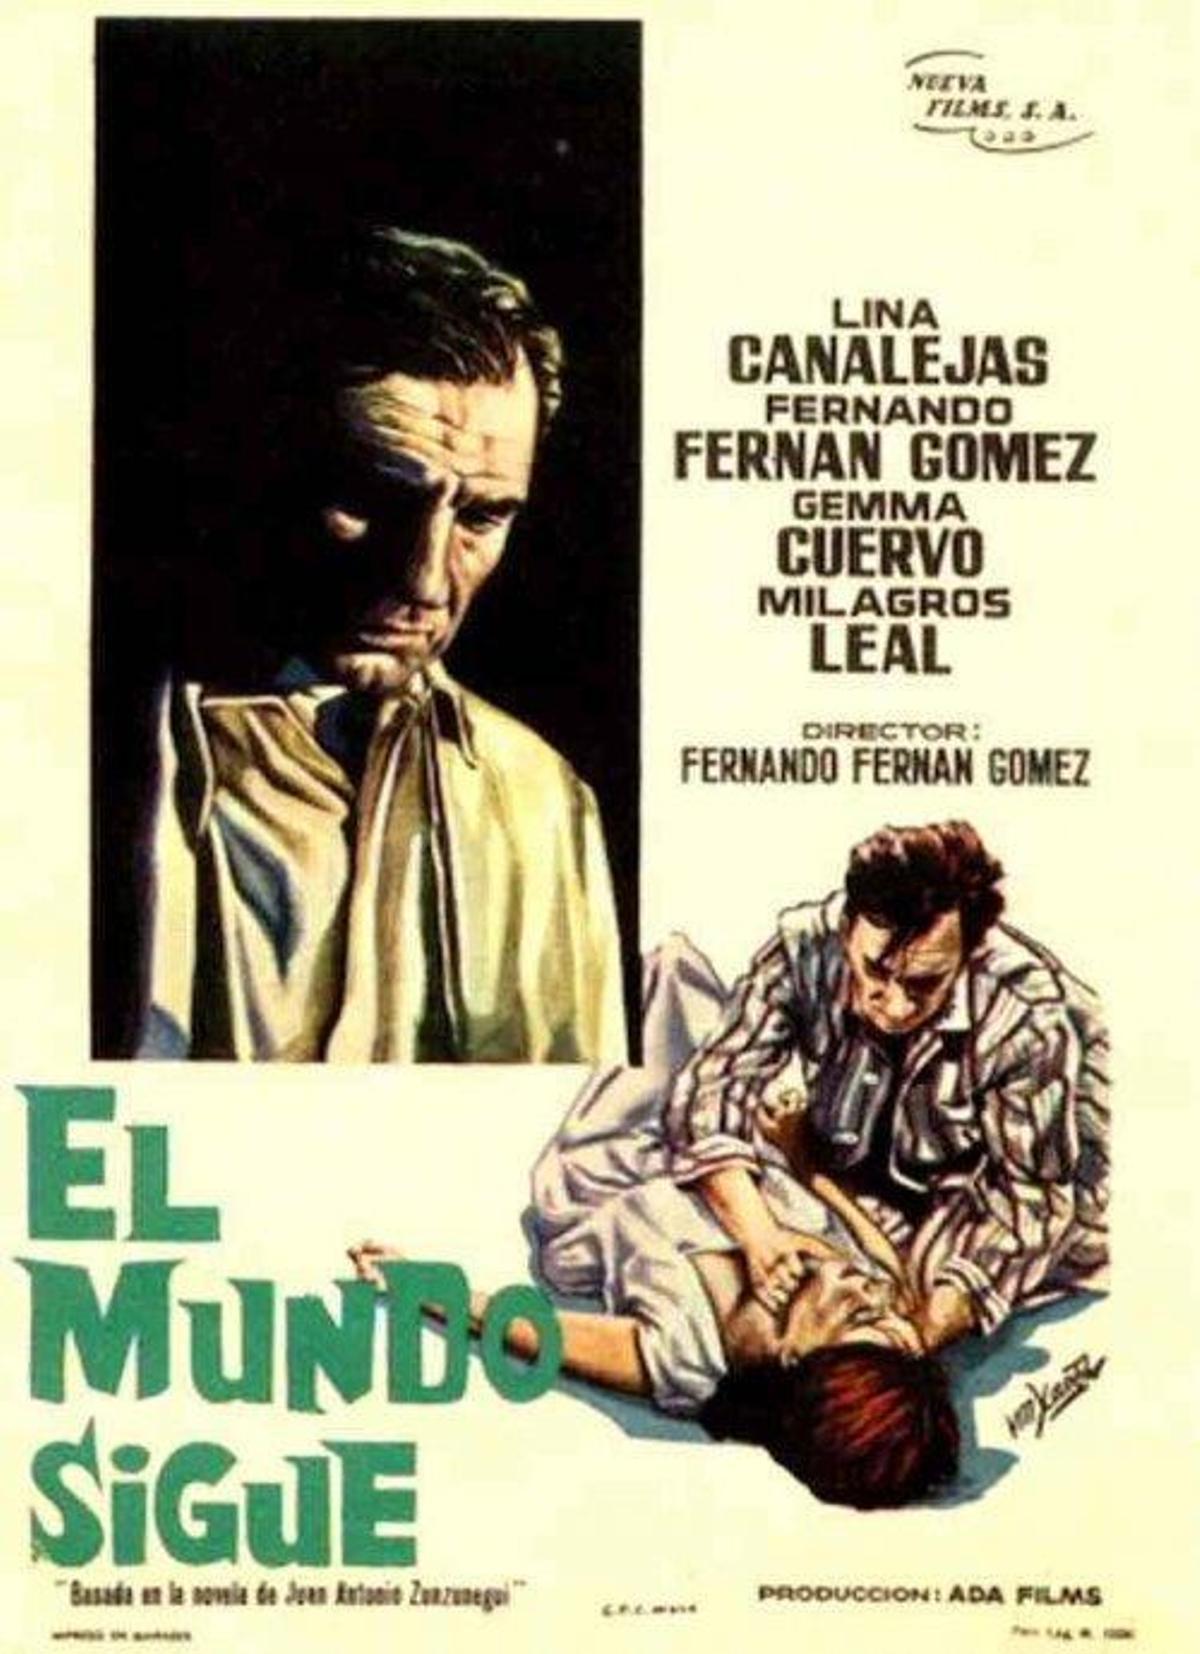 Cartel de la película de Fernán Gómez.